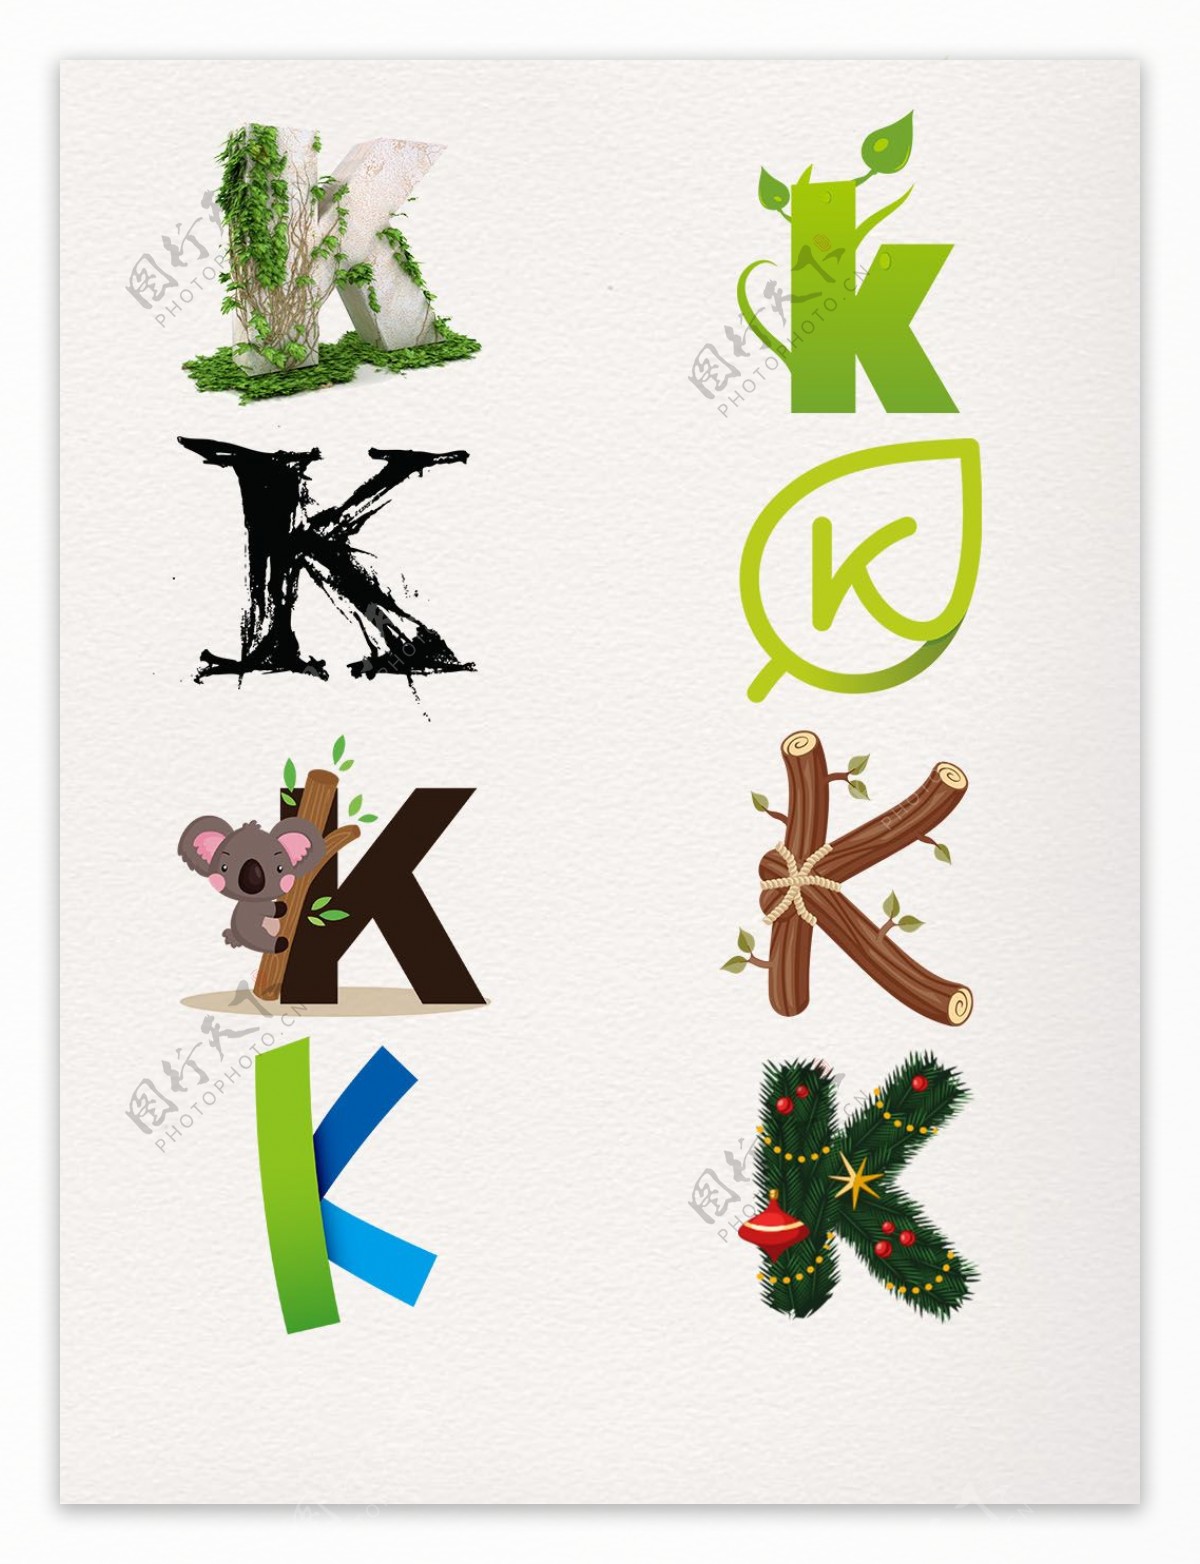 K艺术字图案装饰元素图标素材